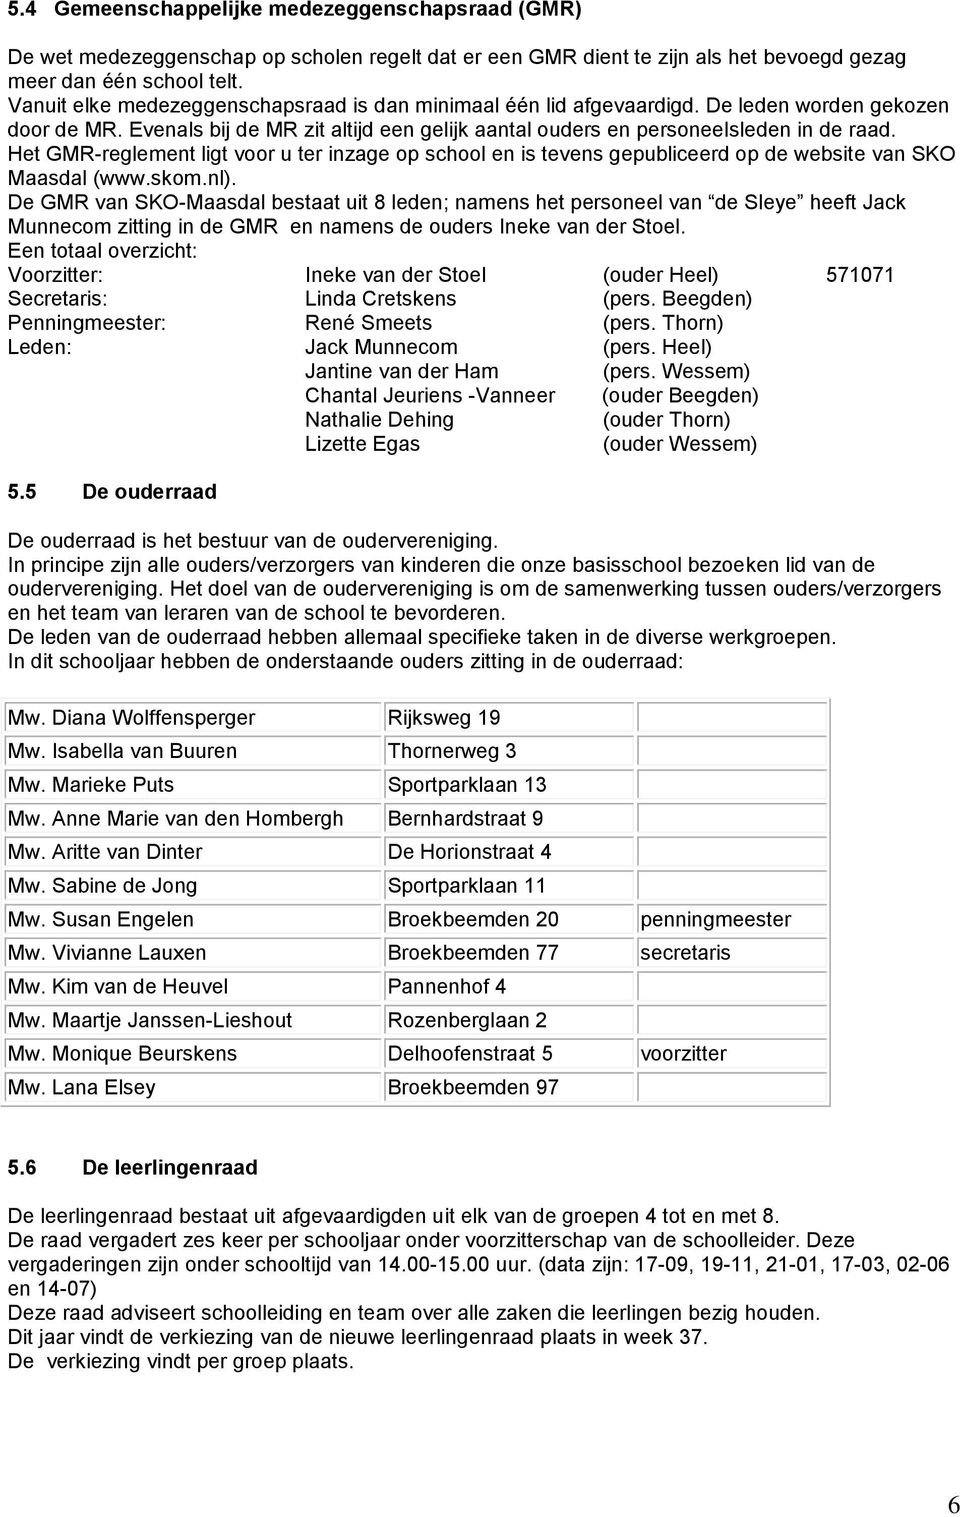 Het GMR-reglement ligt voor u ter inzage op school en is tevens gepubliceerd op de website van SKO Maasdal (www.skom.nl).